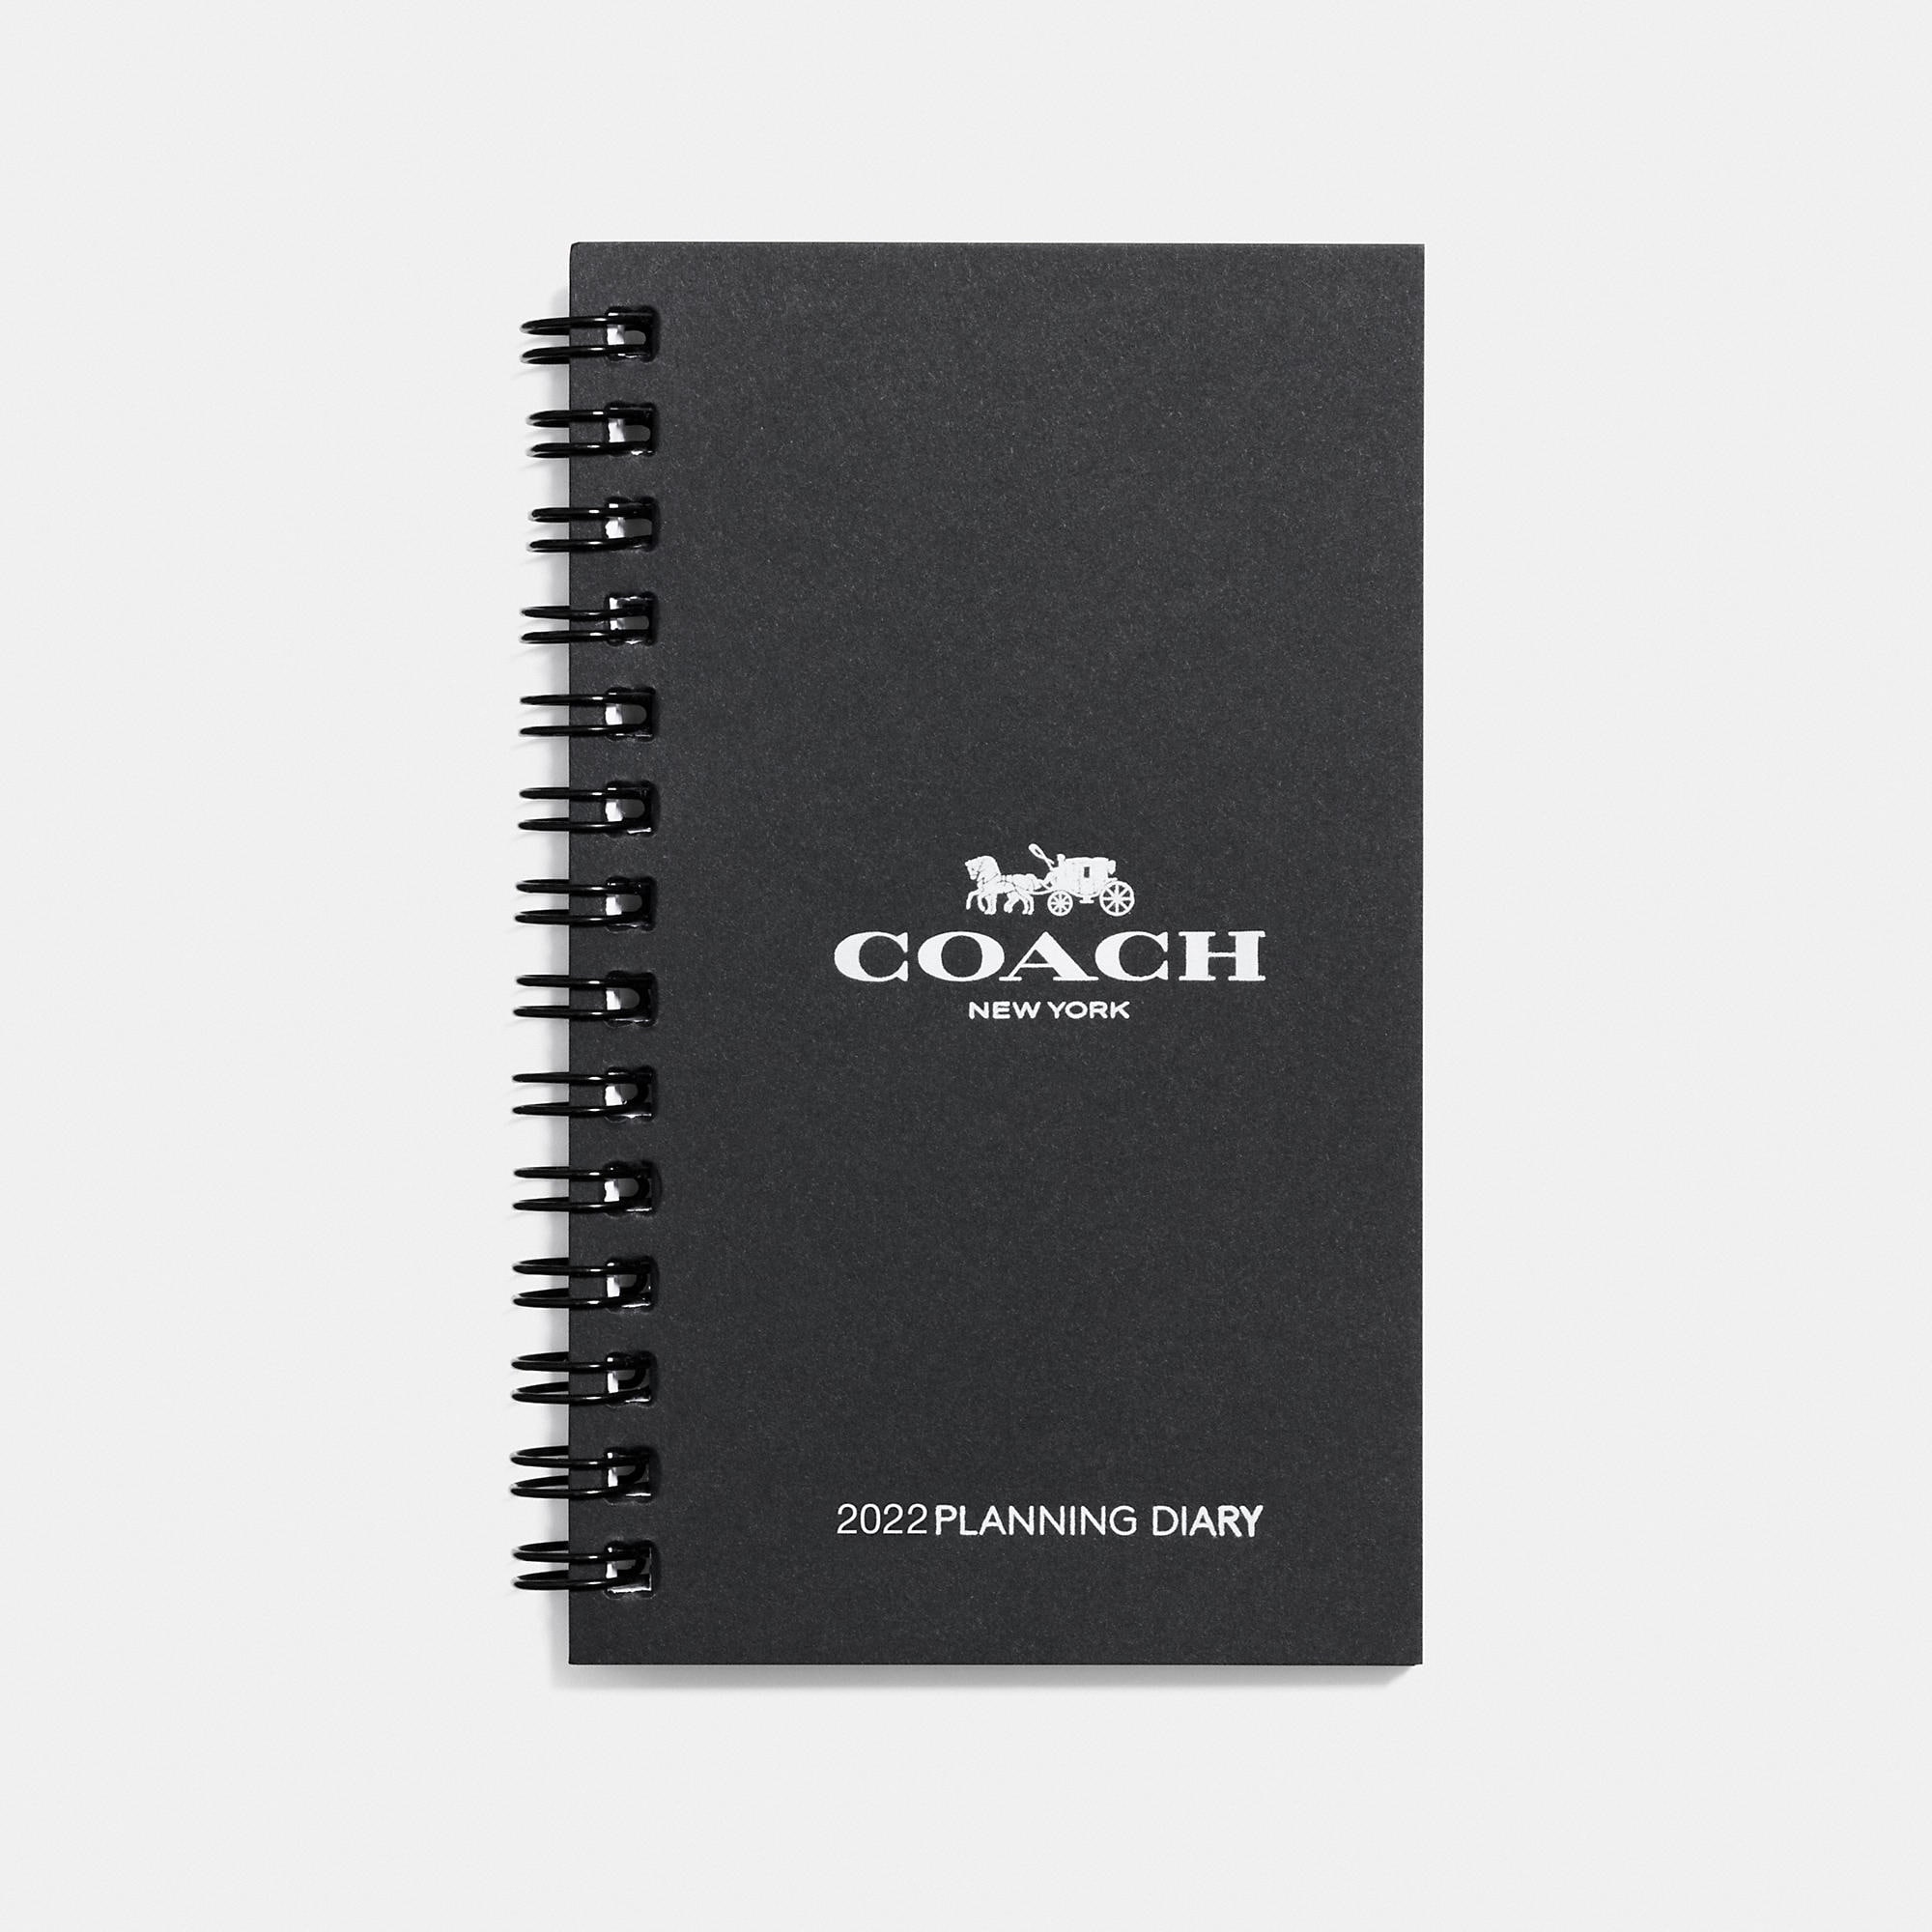 COACH COACH 3X5 SPIRAL DIARY BOOK REFILL,60460 WHT